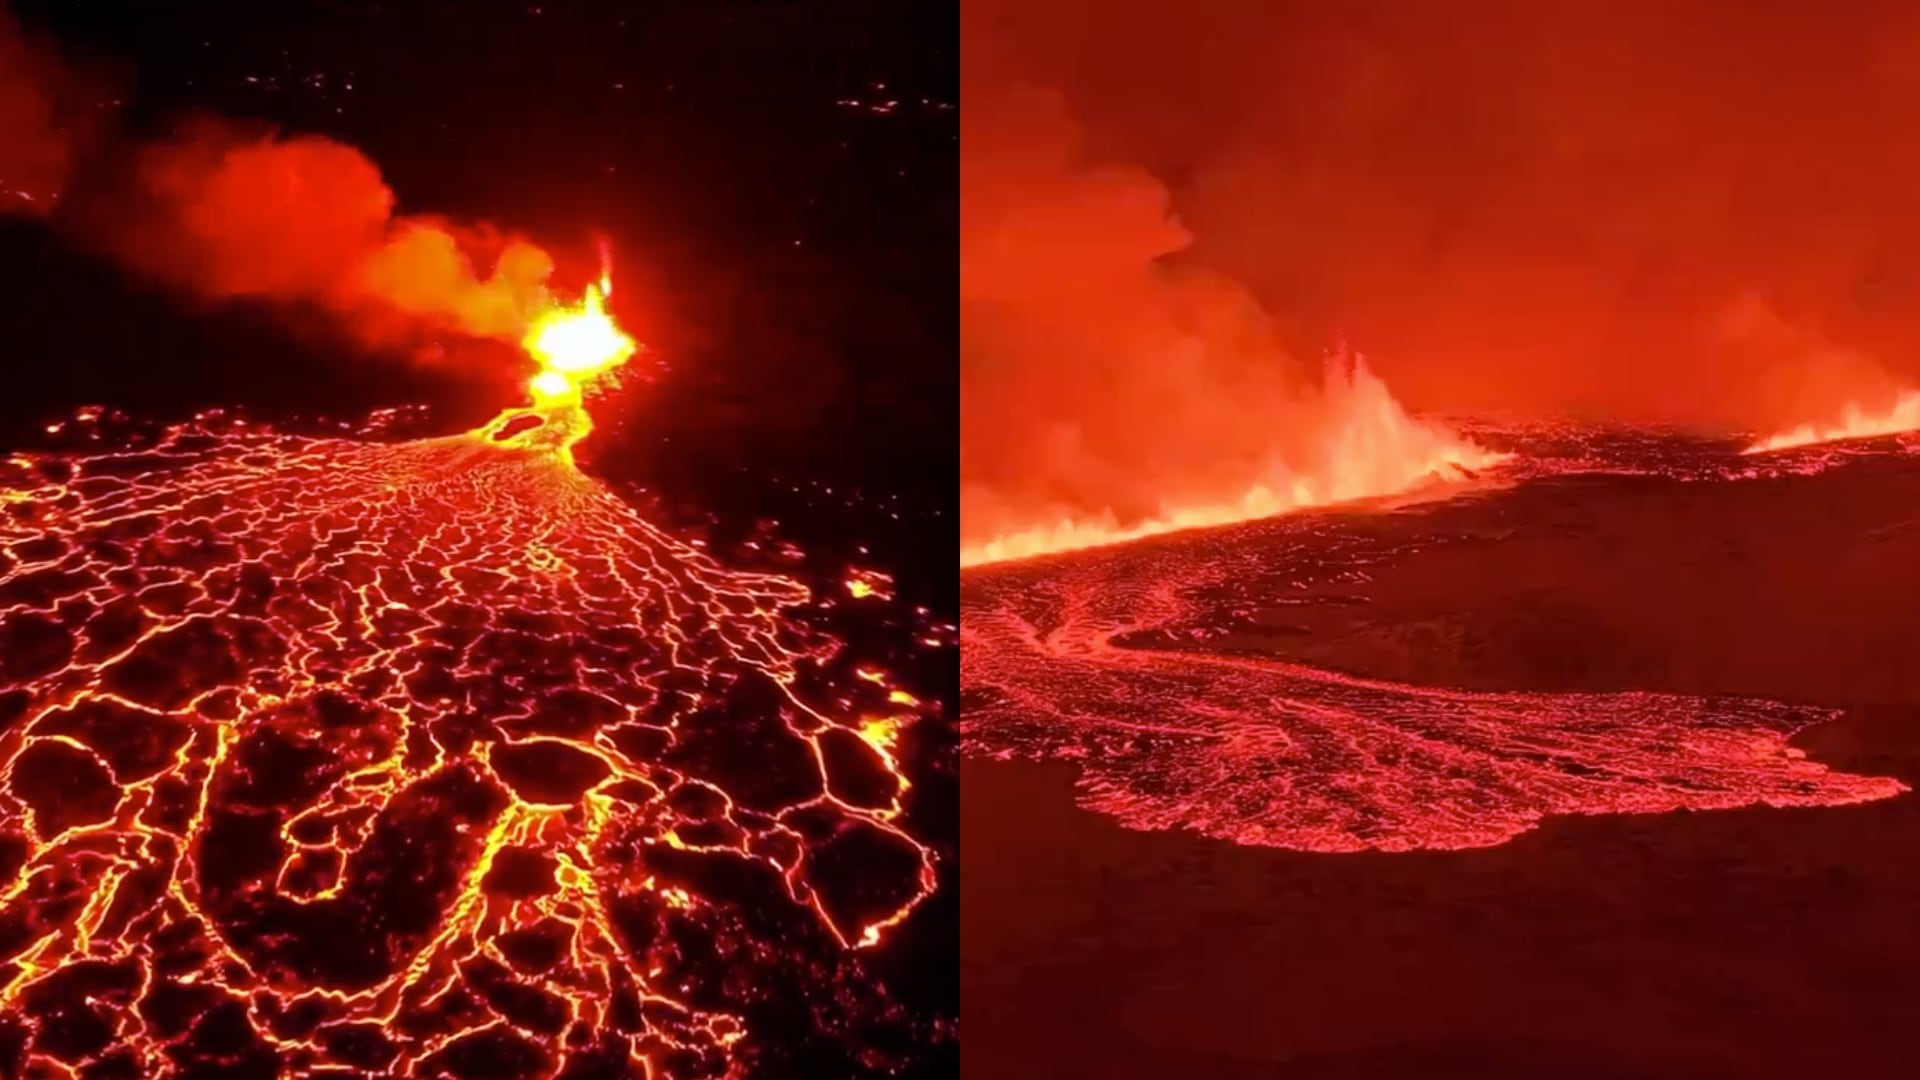 Captan impresionantes imágenes de la fisura volcánica en Reykjanes, Islandia